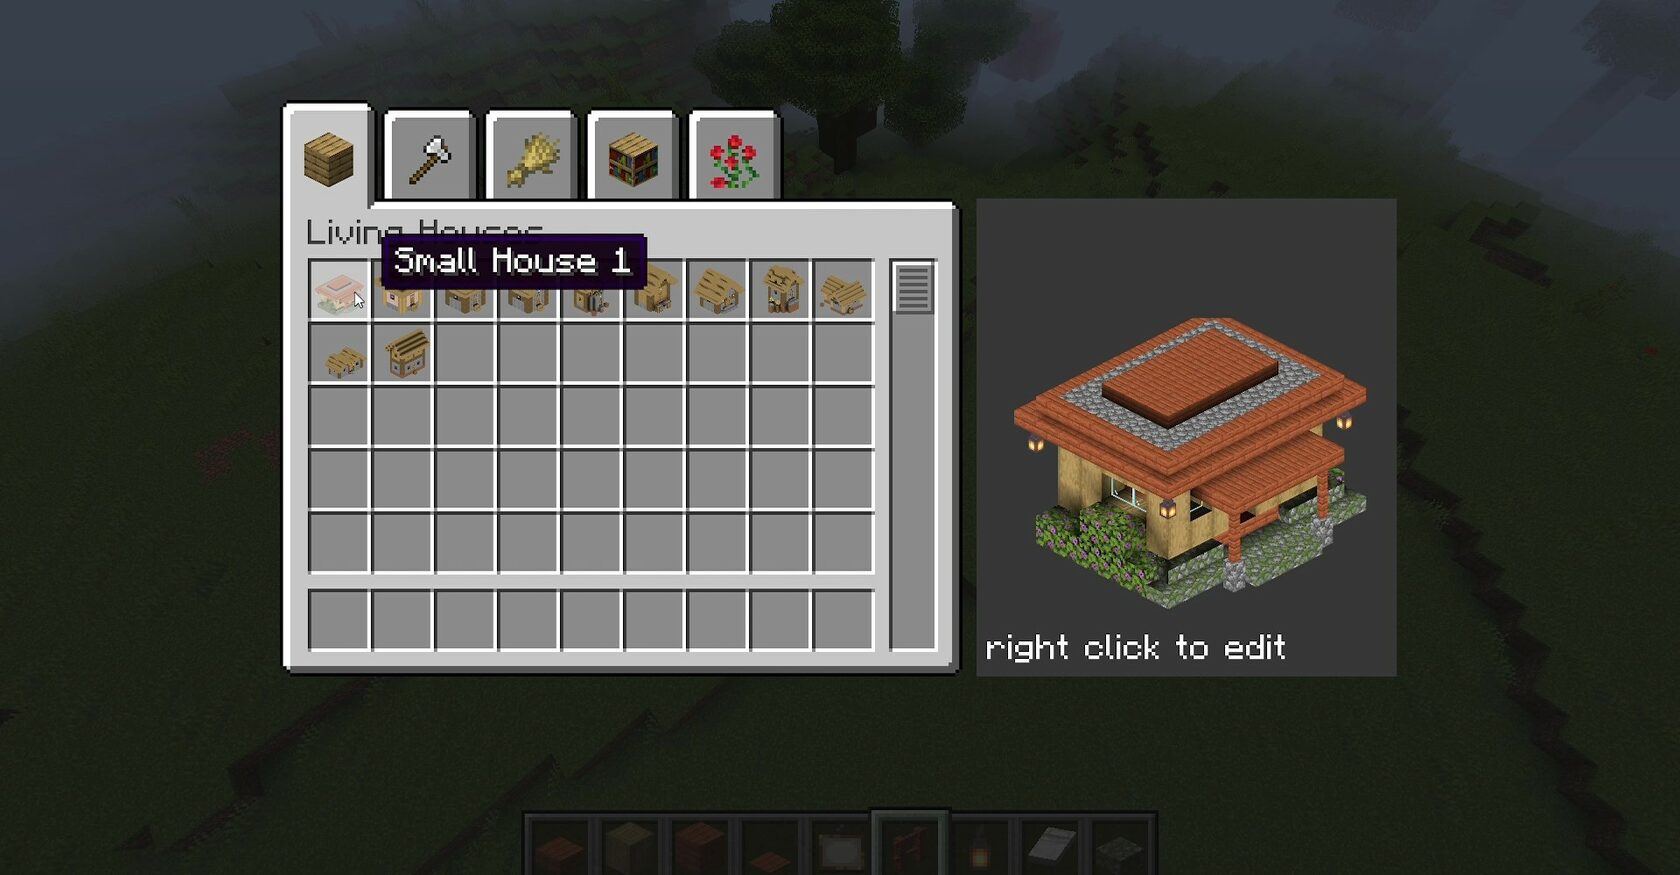 minecraft village blueprints